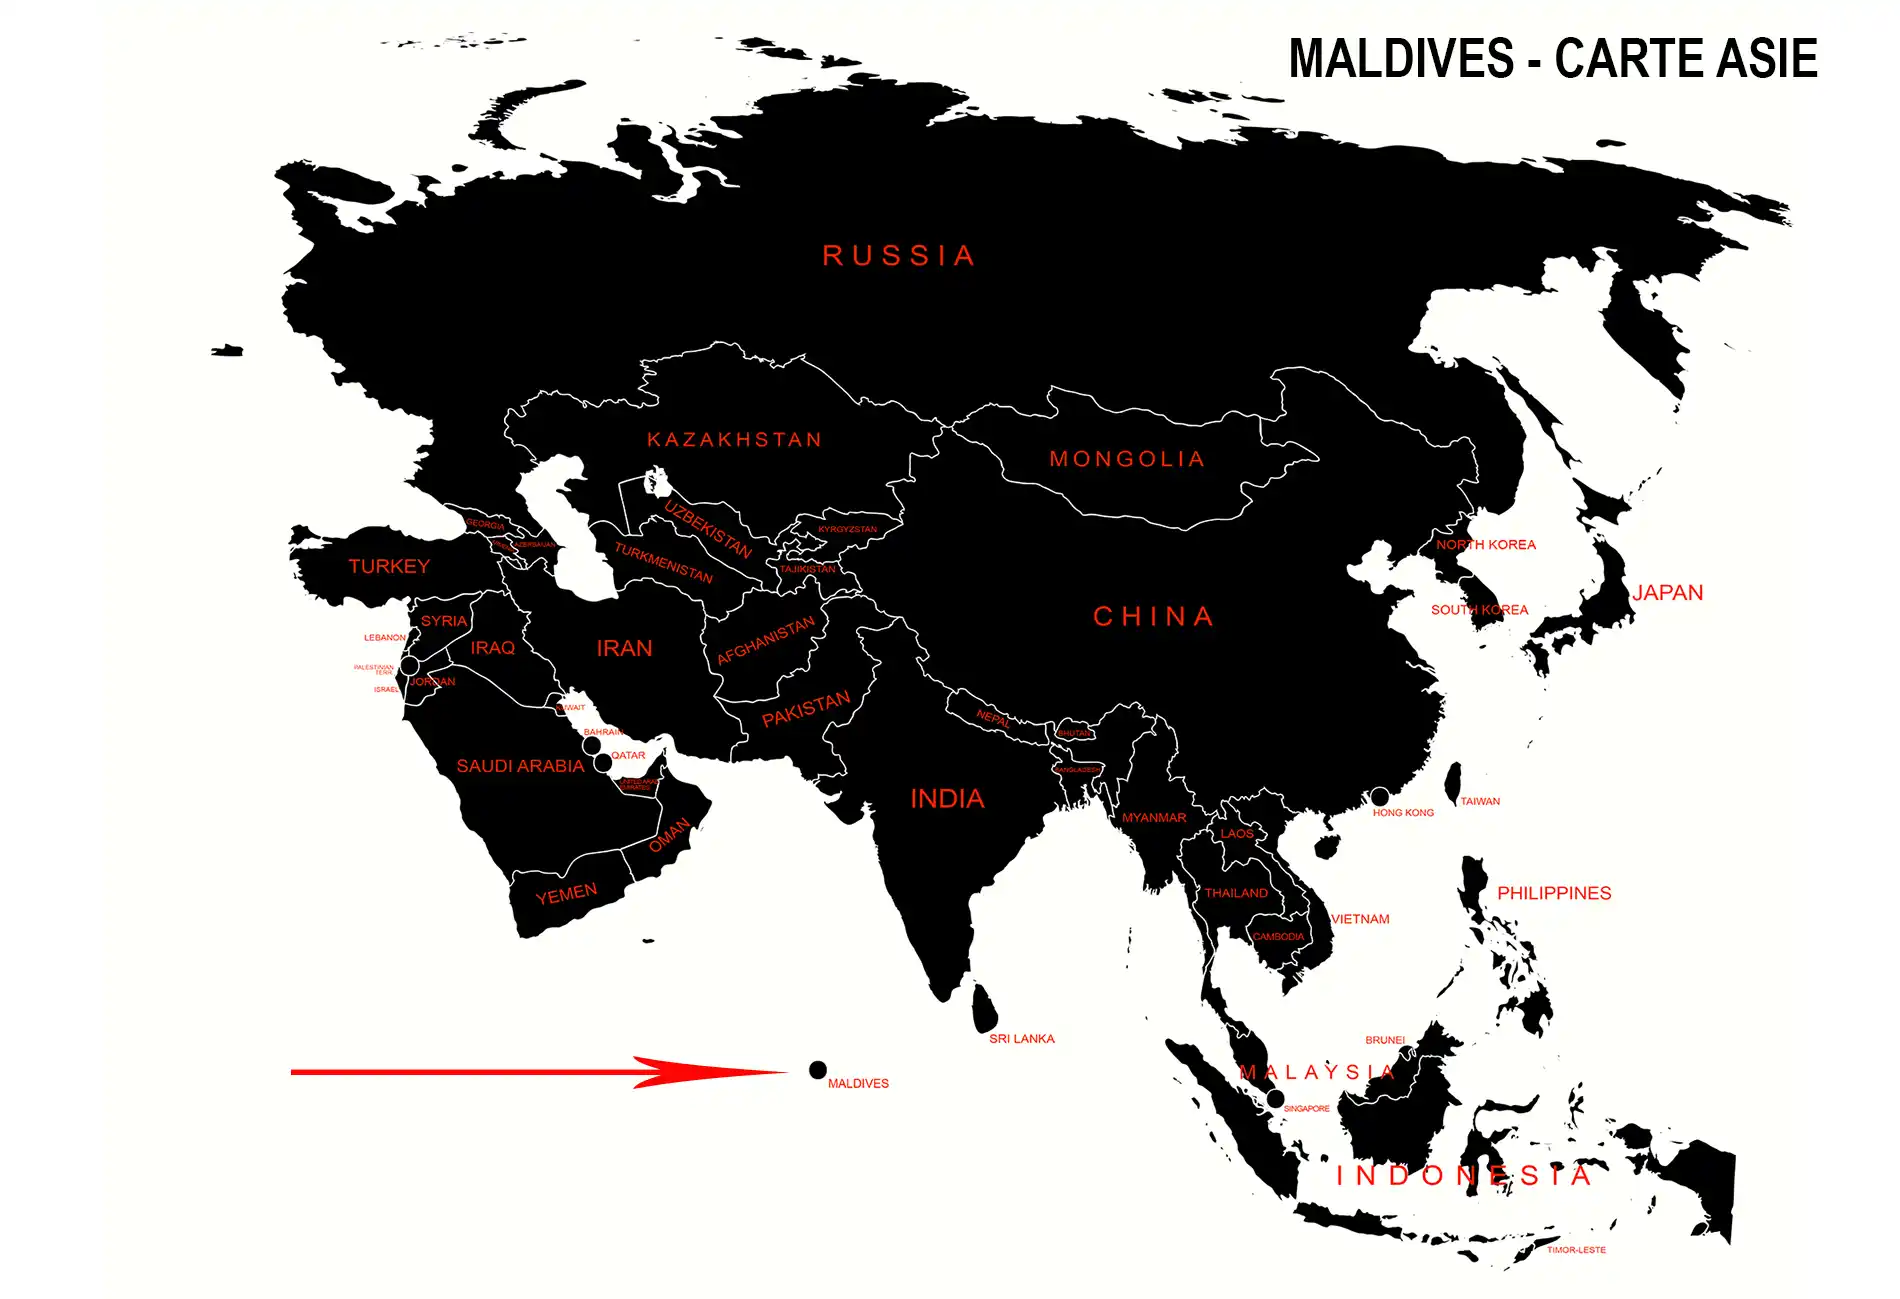 Maldives sur la carte Asie